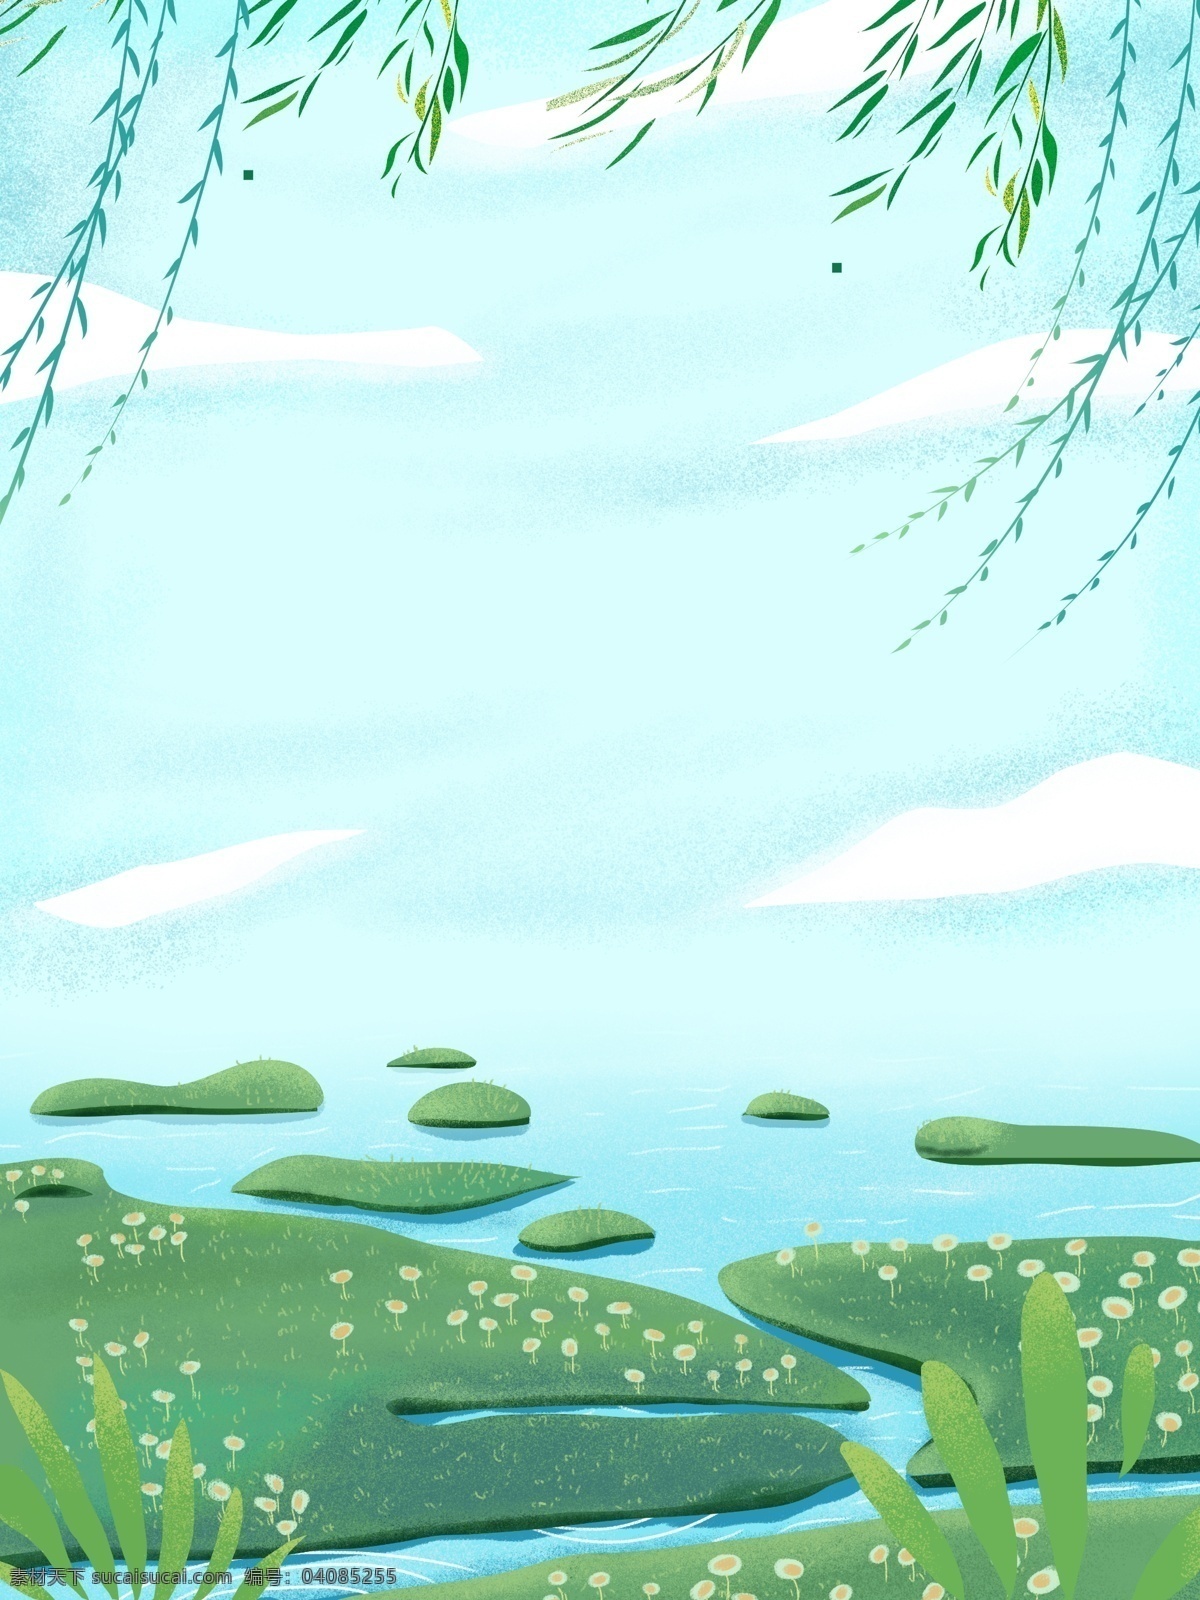 清明 唯美 清新 风景 插画 背景 植物背景 草地背景 绿地背景 蓝天白云 叶子 河边 山水风景